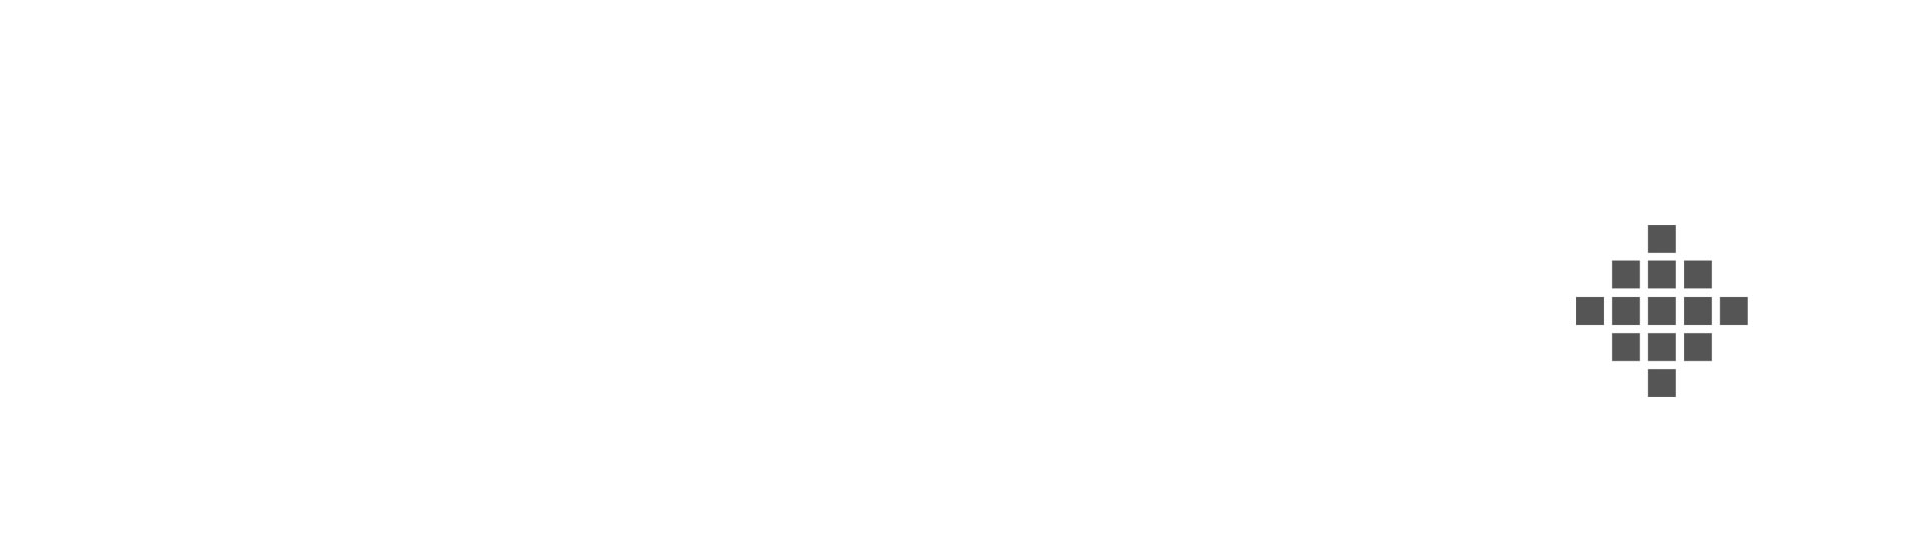 Platform explainer